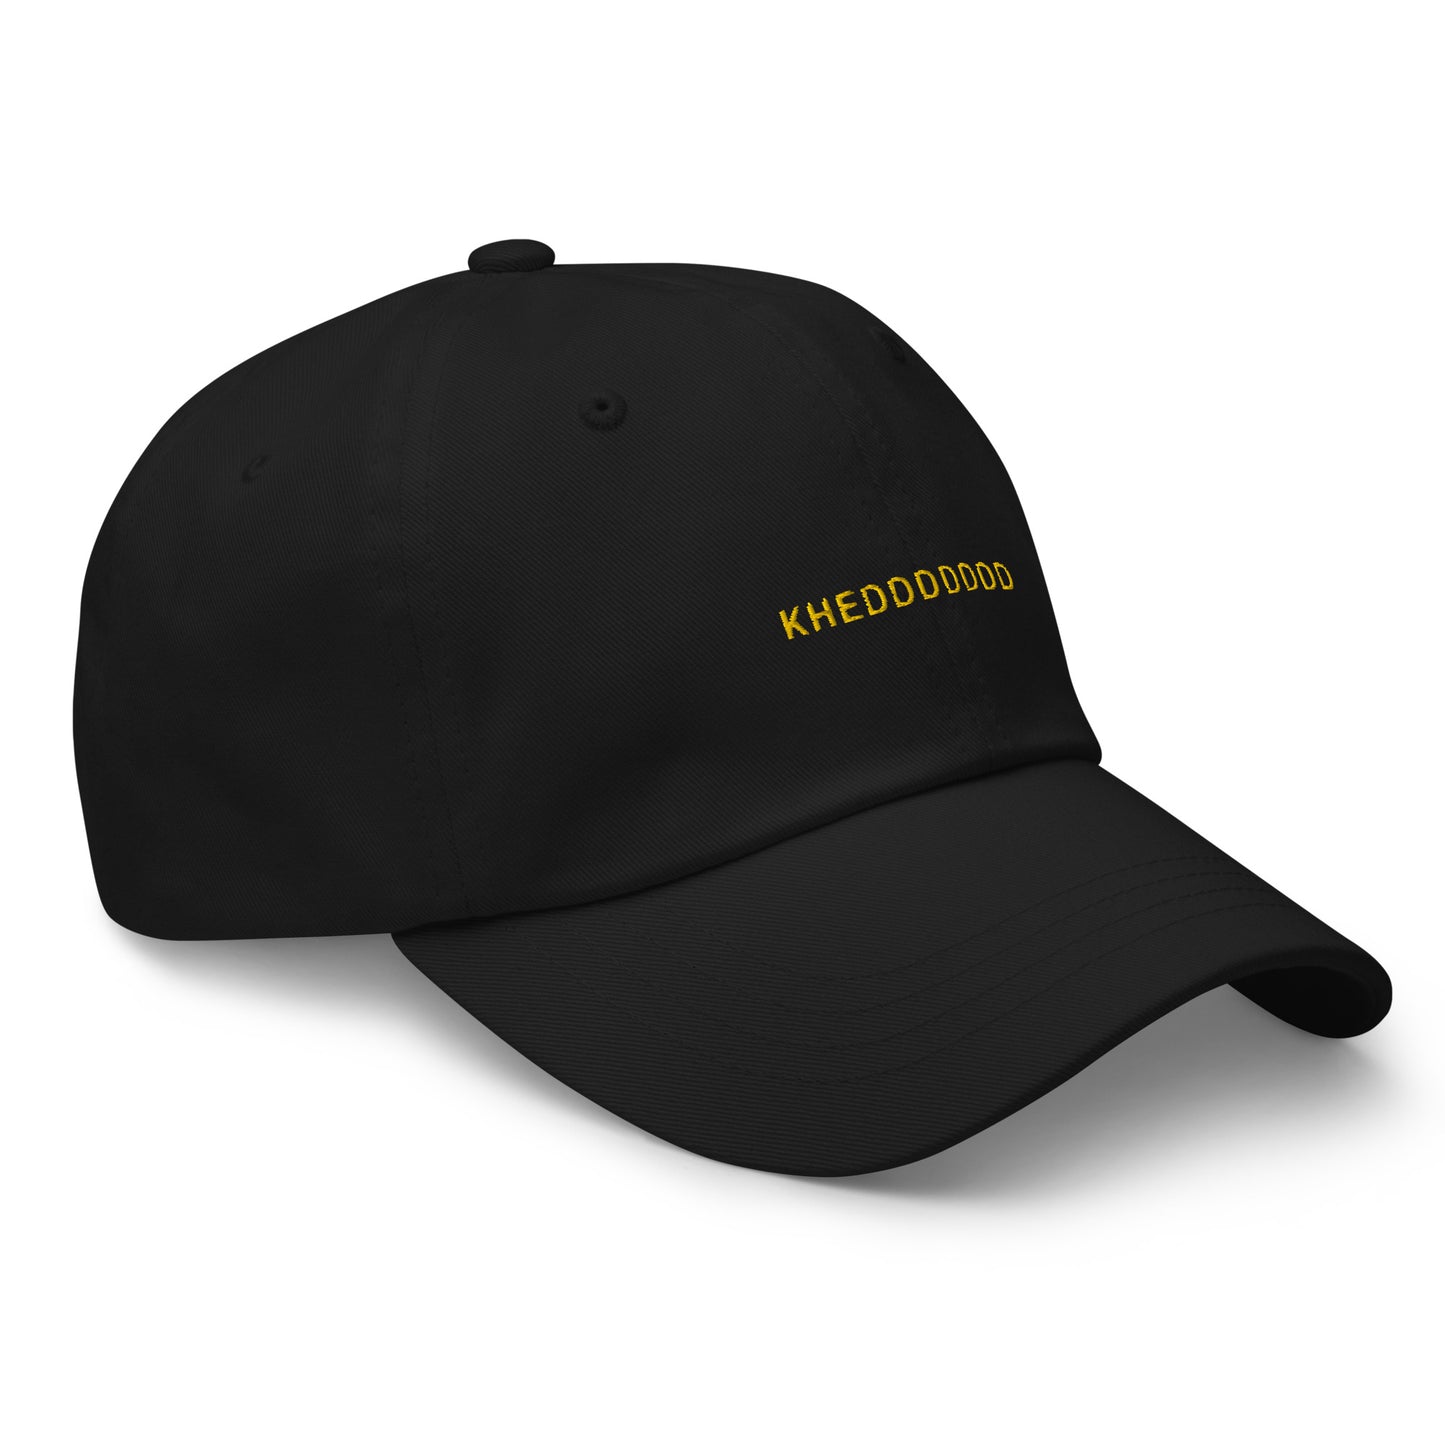 black hat that says "khedddddd" in gold lettering